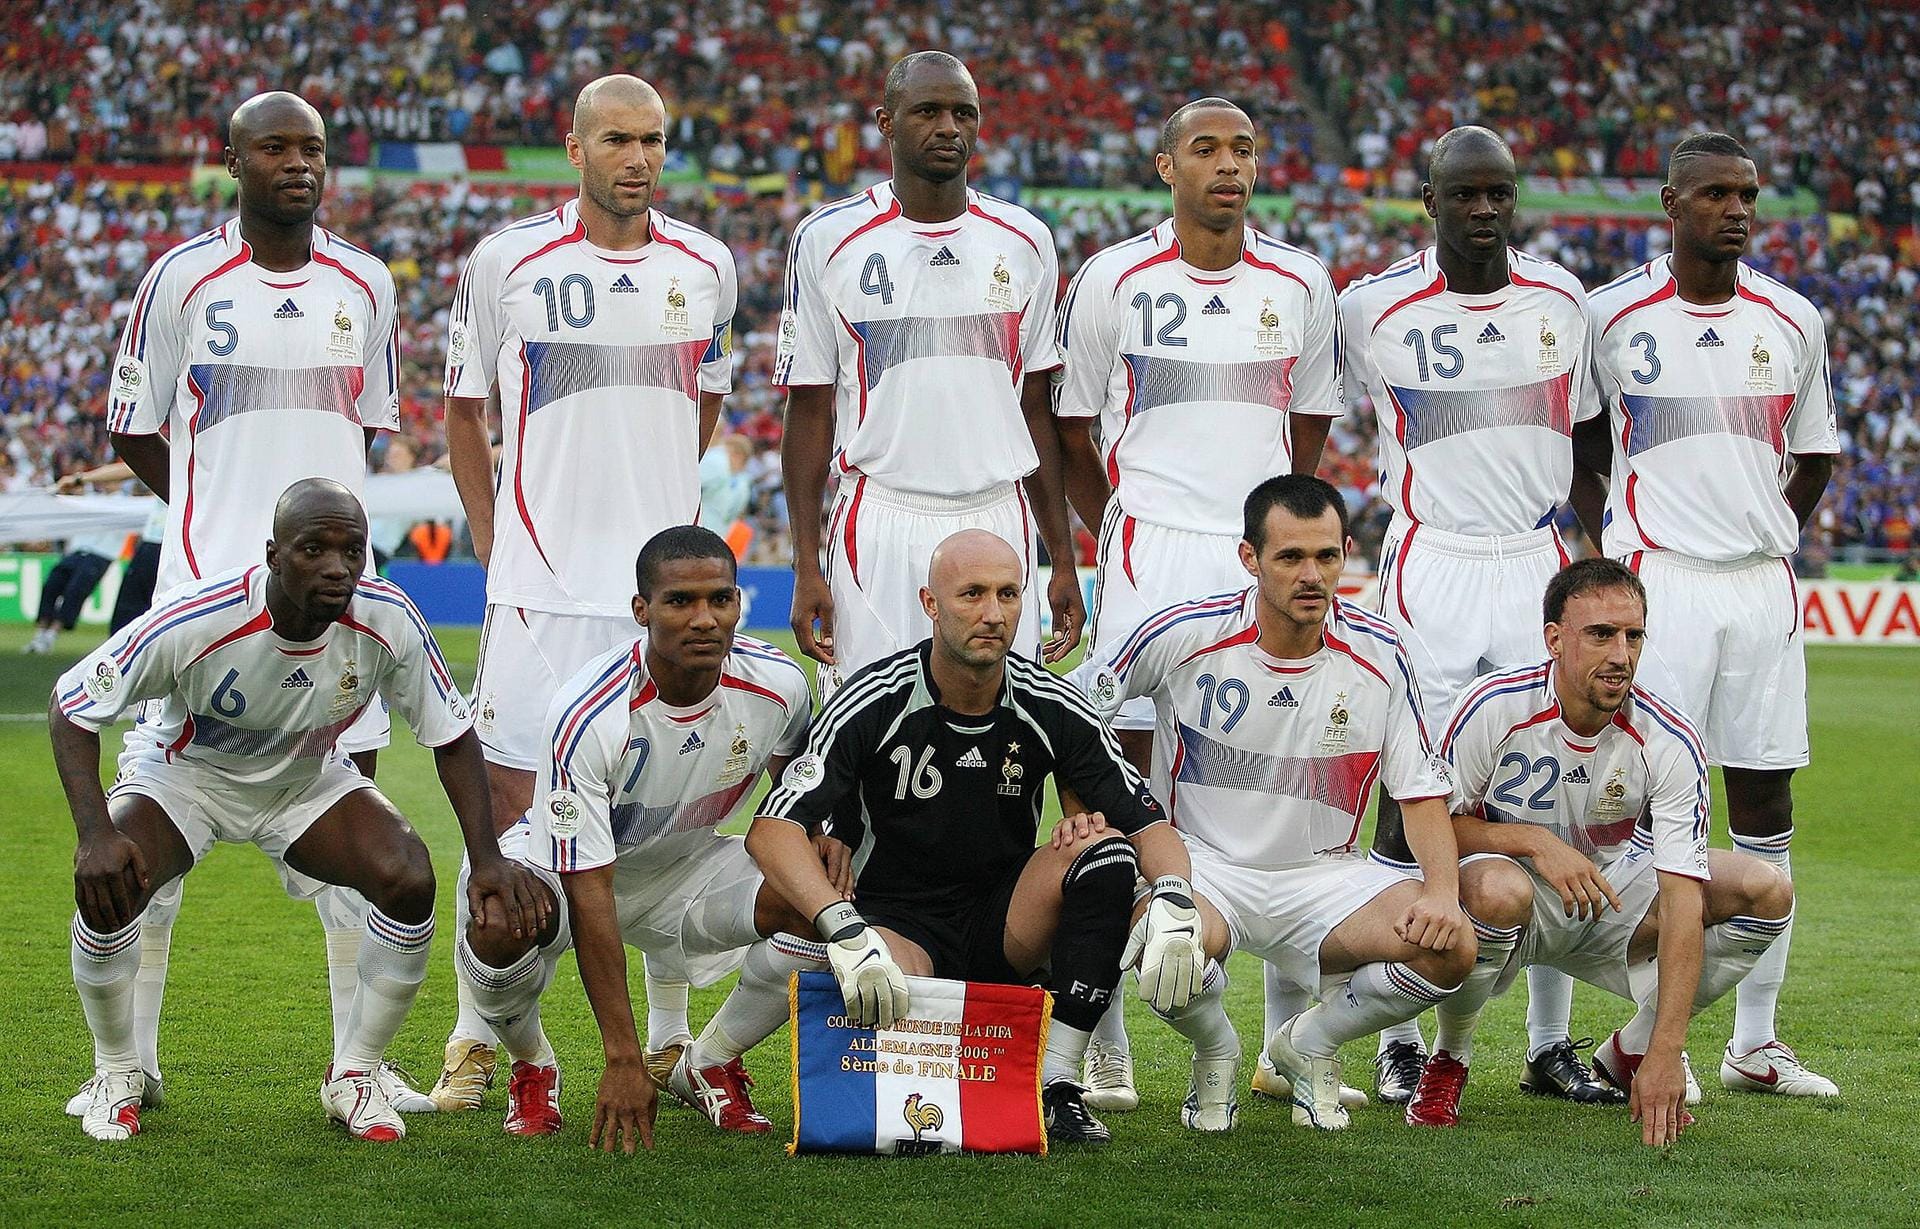 WM 2006: Nach der WM in Deutschland beendete Zidane seine aktive Fußballkarriere – und sorgte im Finale für eine der legendärsten Szenen der Fußballgeschichte. In der 109. Minute bekam der Franzose nach einem Kopfstoß gegen Italiens Marco Materazzi die Rote Karte und musste vom Platz. Italien gewann 5:3 nach Elfmeterschießen.